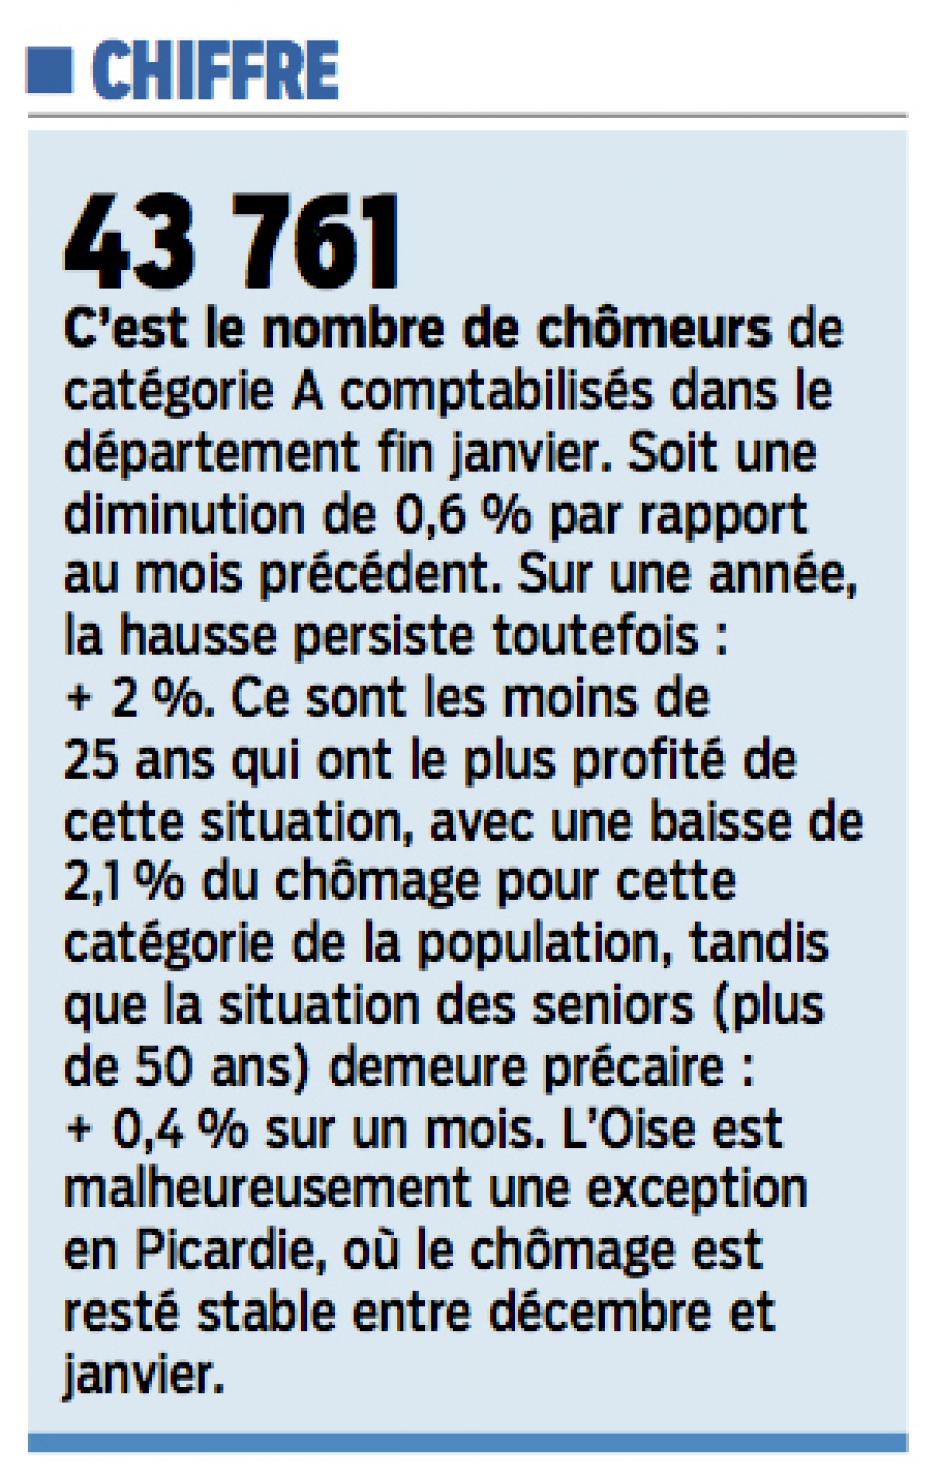 20150226-LeP-Oise-43 761 chômeurs de catégorie A en janvier dans le département